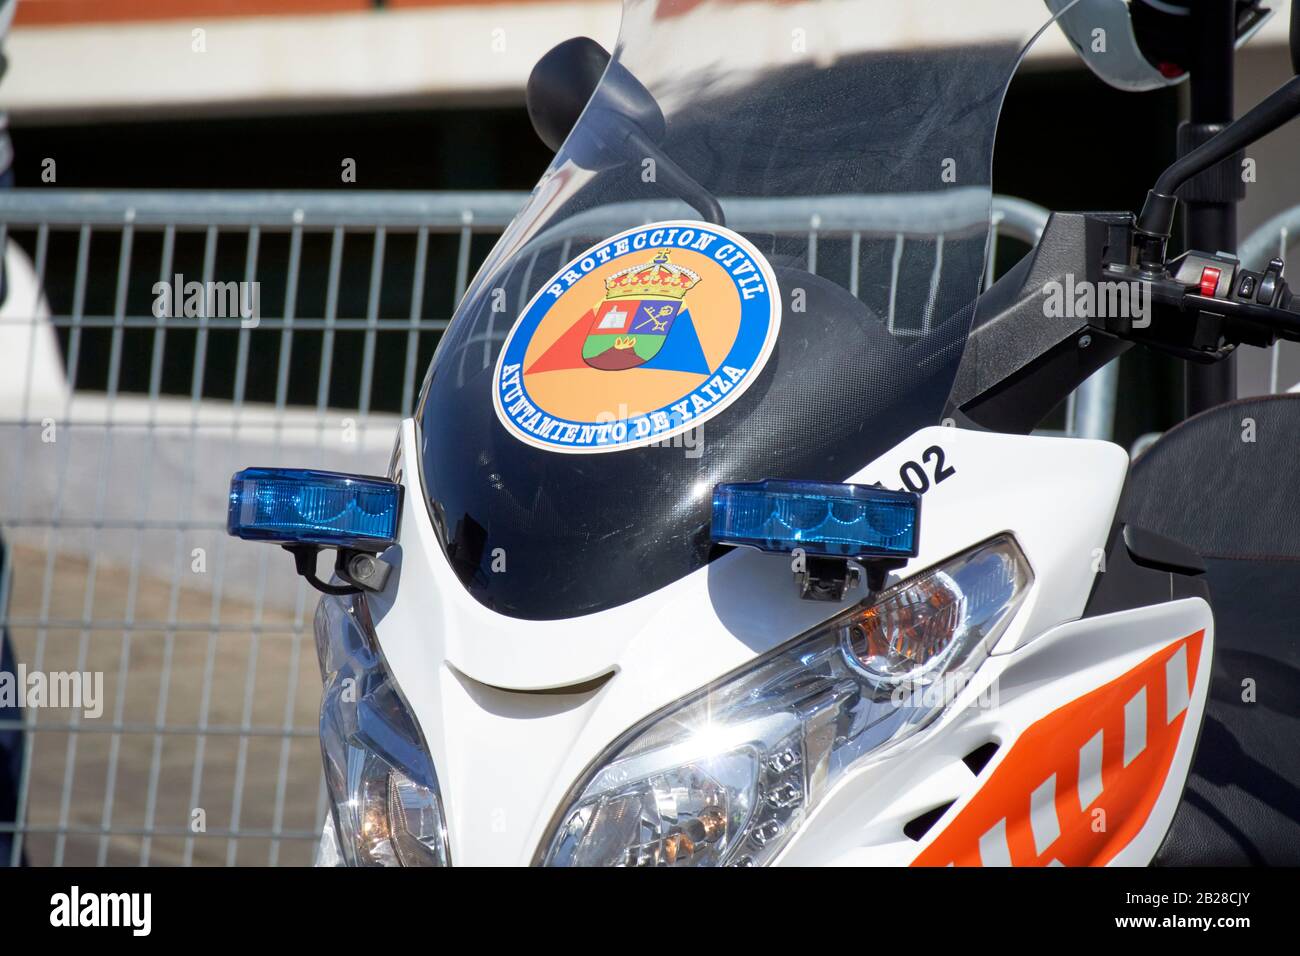 Proteccion civil défense véhicule ayuntamiento de yaiza réponse espagnole scooter cyclomoteur local Lanzarote îles canaries espagne Banque D'Images